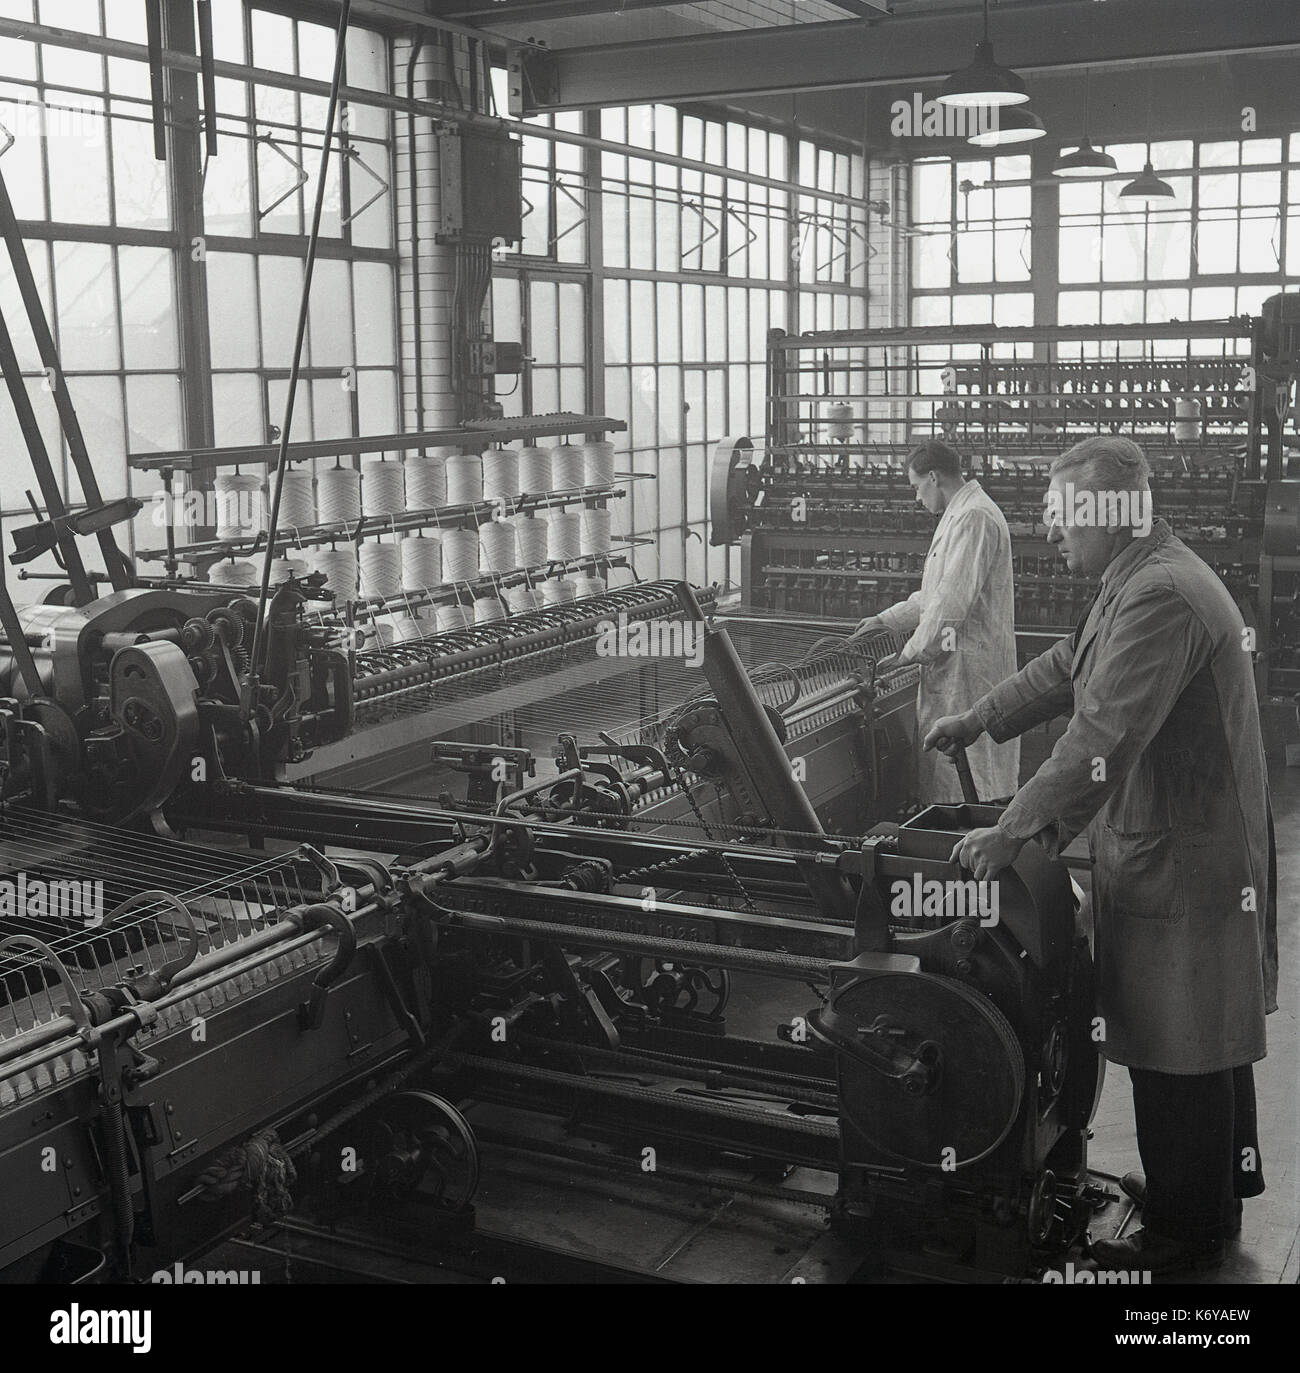 1950, historische, Bild zeigt Männer in Latzhosen arbeitenden großen komplexen mechanischen Maschinen, ein Spinner und Spinning Mule in der kammgarn Spinningraum, Leeds, England, UK. Kammgarn ist eine feine glatte Stoff aus langen Fasern der Wolle Garn und der spining Prozess langsamer ist. Stockfoto